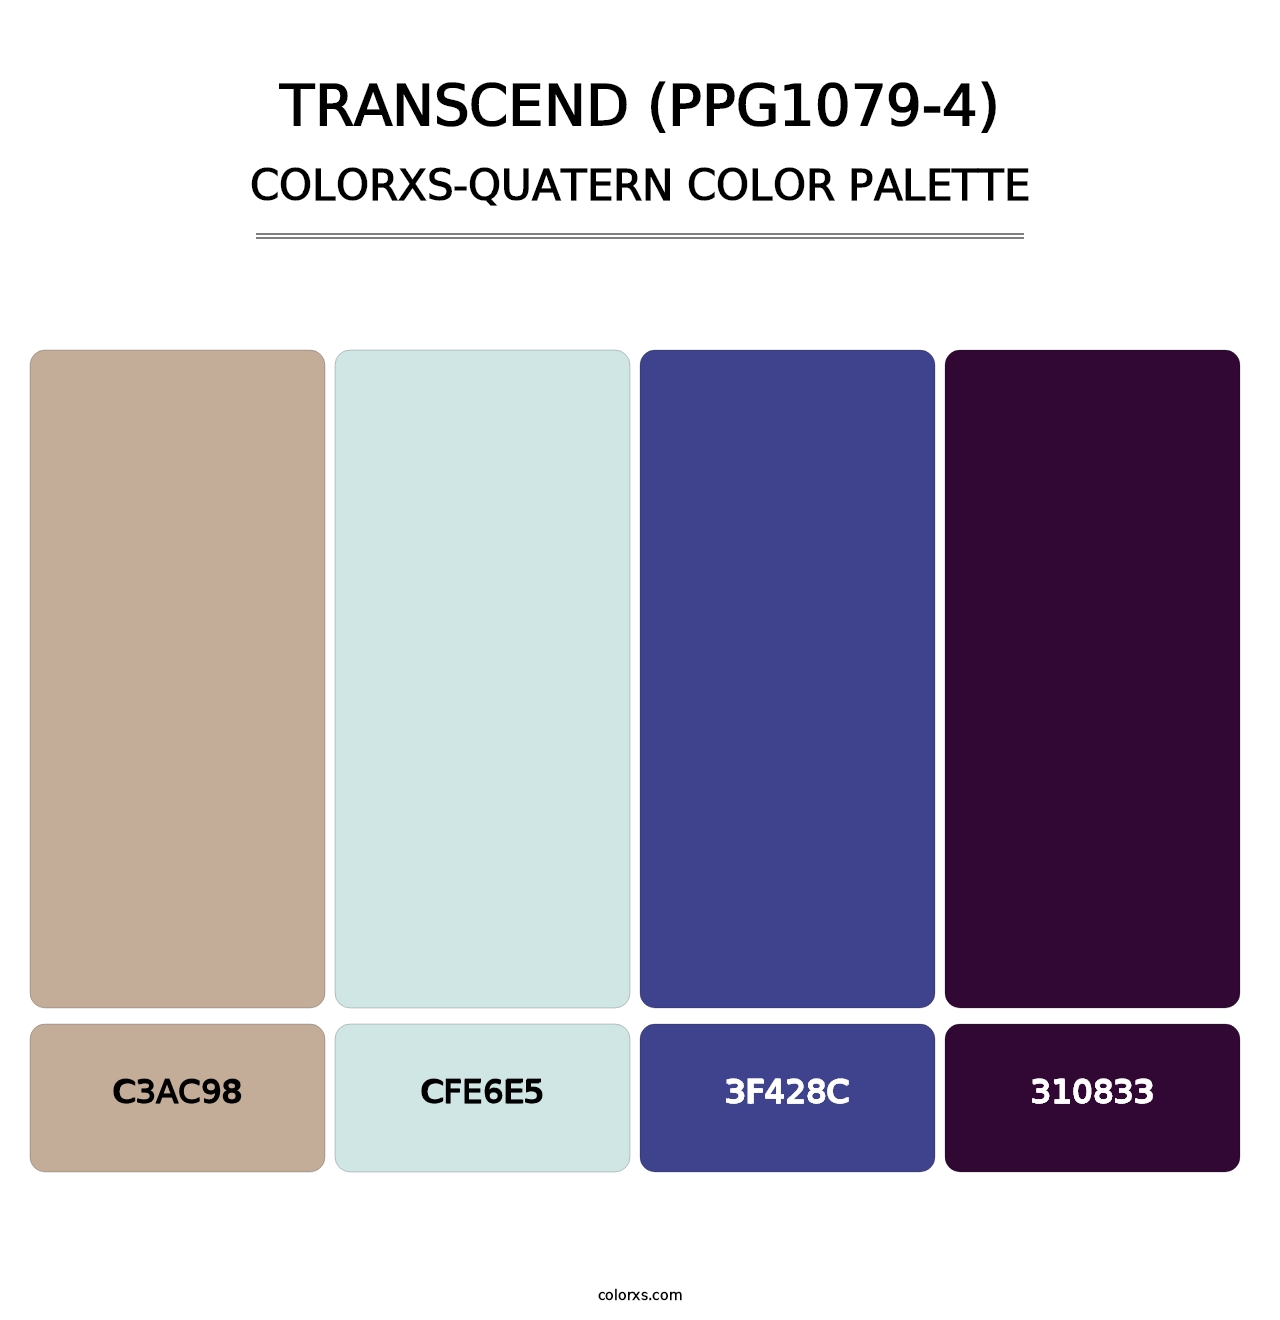 Transcend (PPG1079-4) - Colorxs Quatern Palette